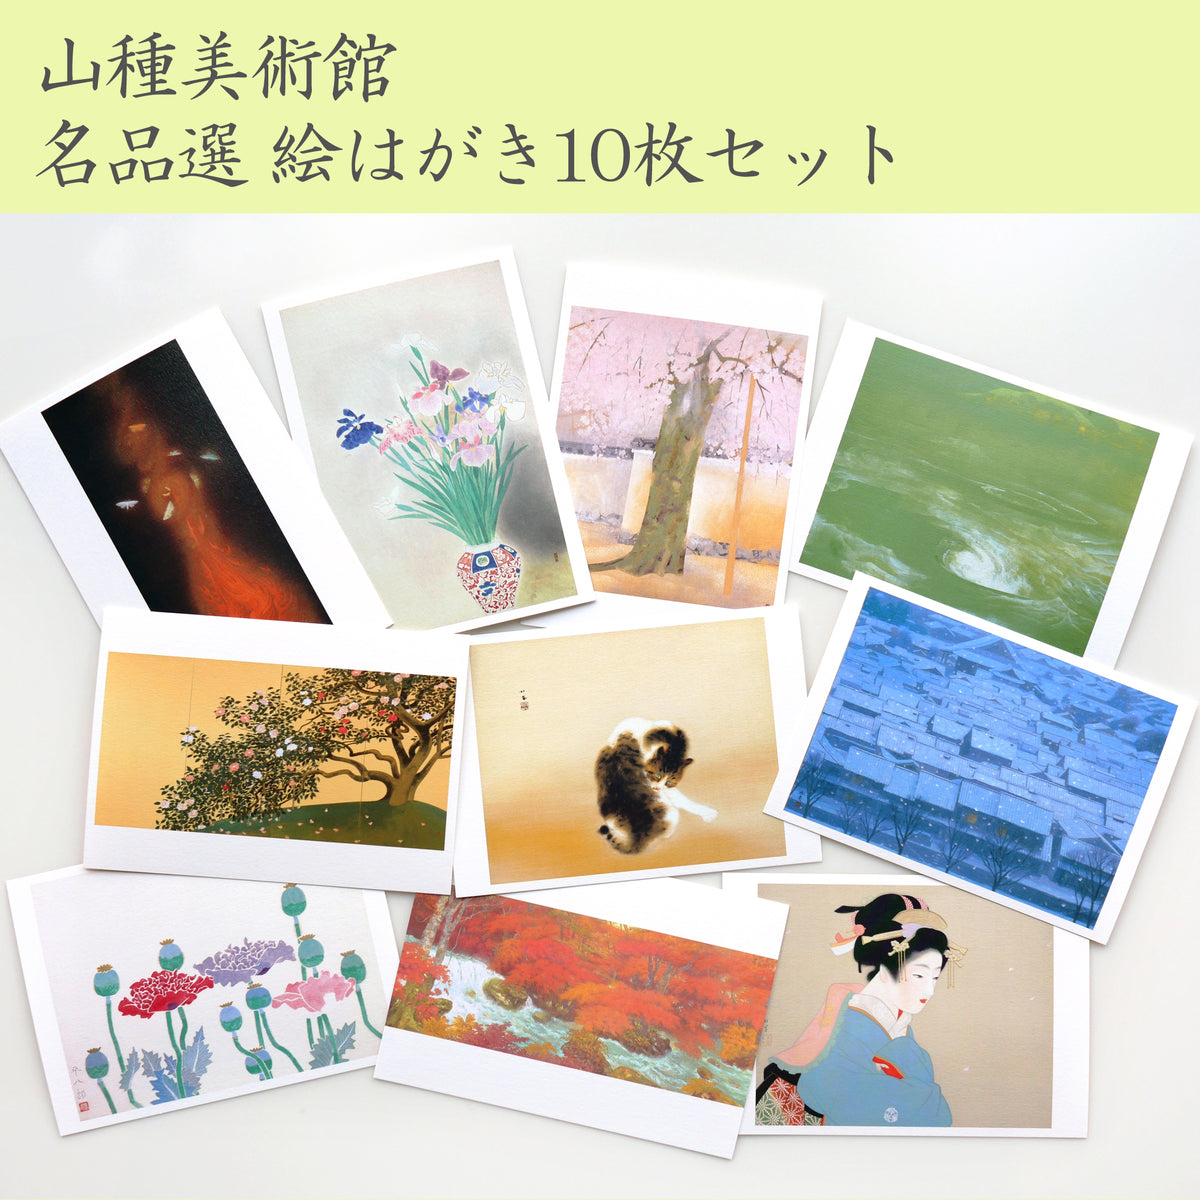 山種美術館 名品選 絵はがき10枚セット ¥1,100